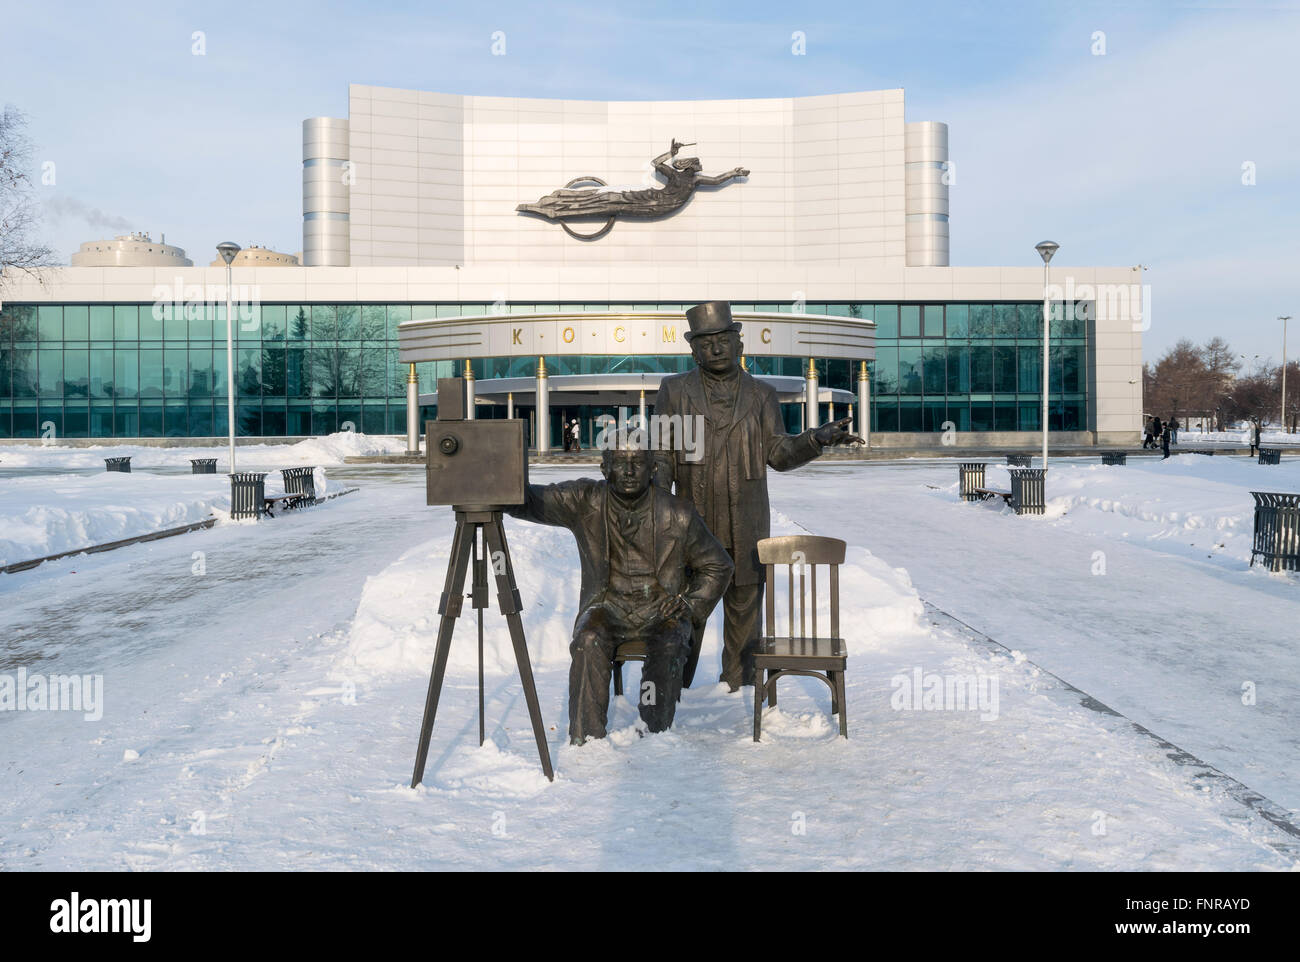 Kosmos et théâtre sculpture frères Lumière en hiver Banque D'Images